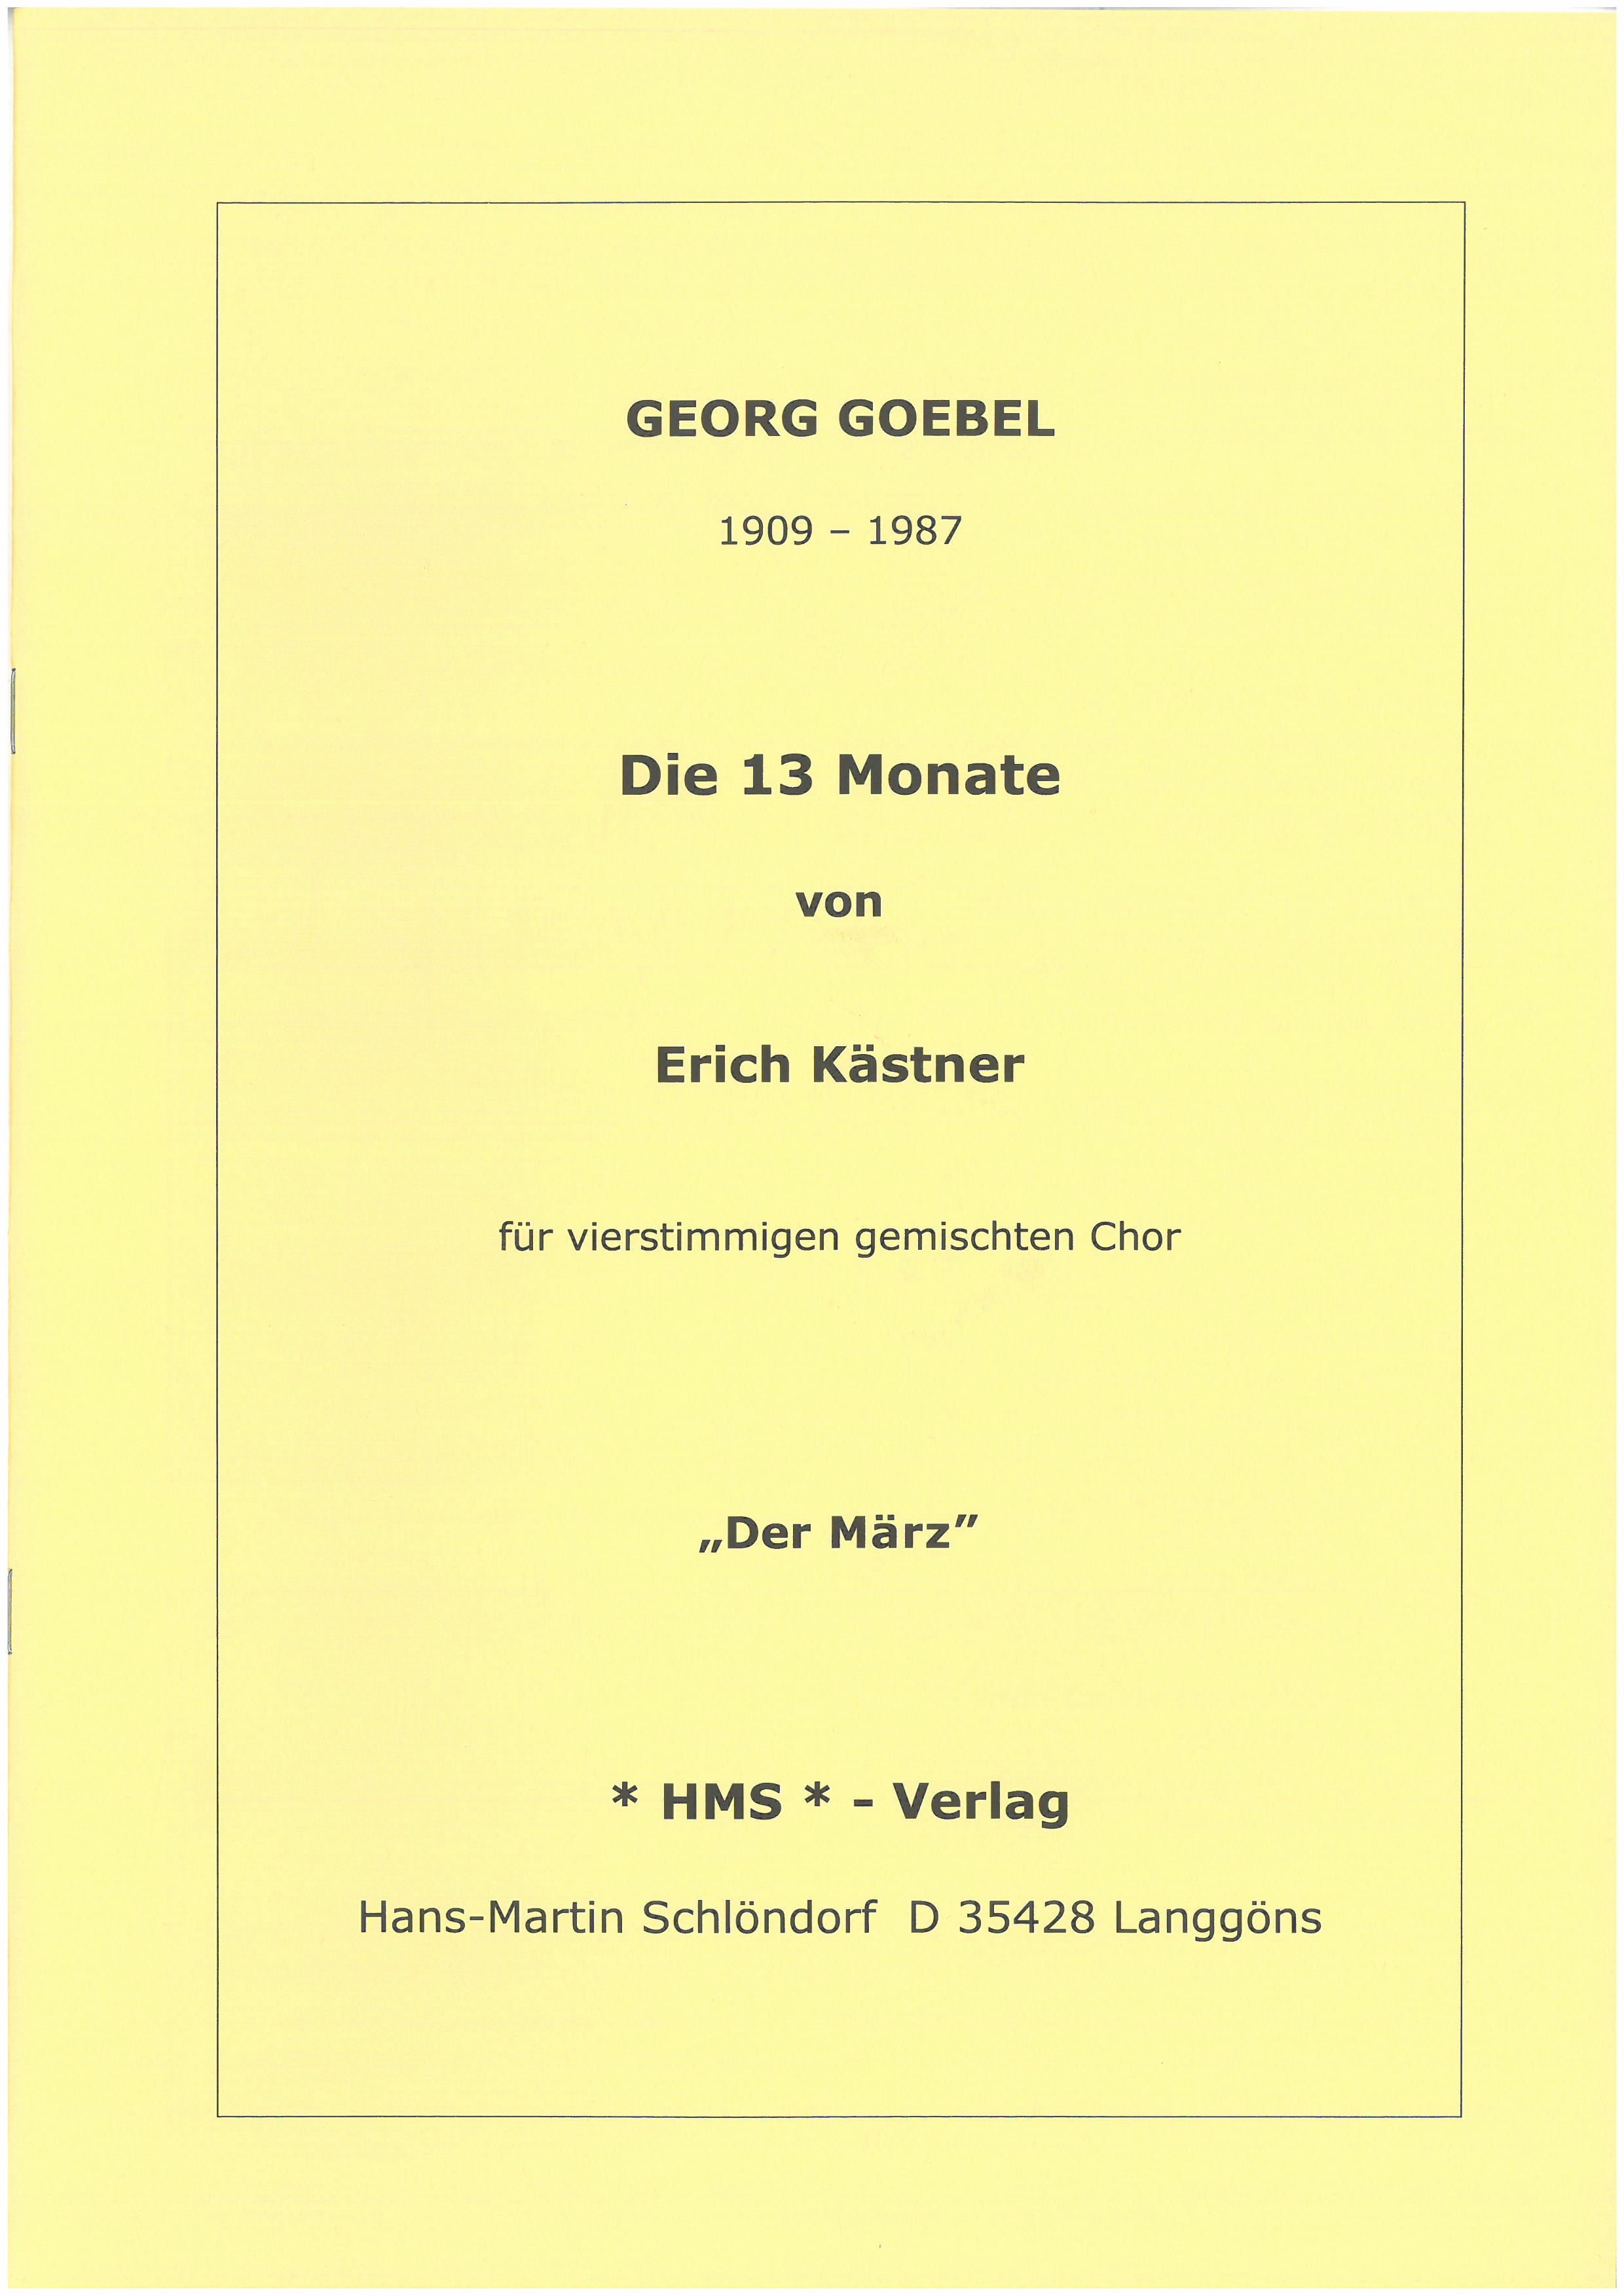 März aus dem Chorzyklus 13 Monate - nach Erich Kästner